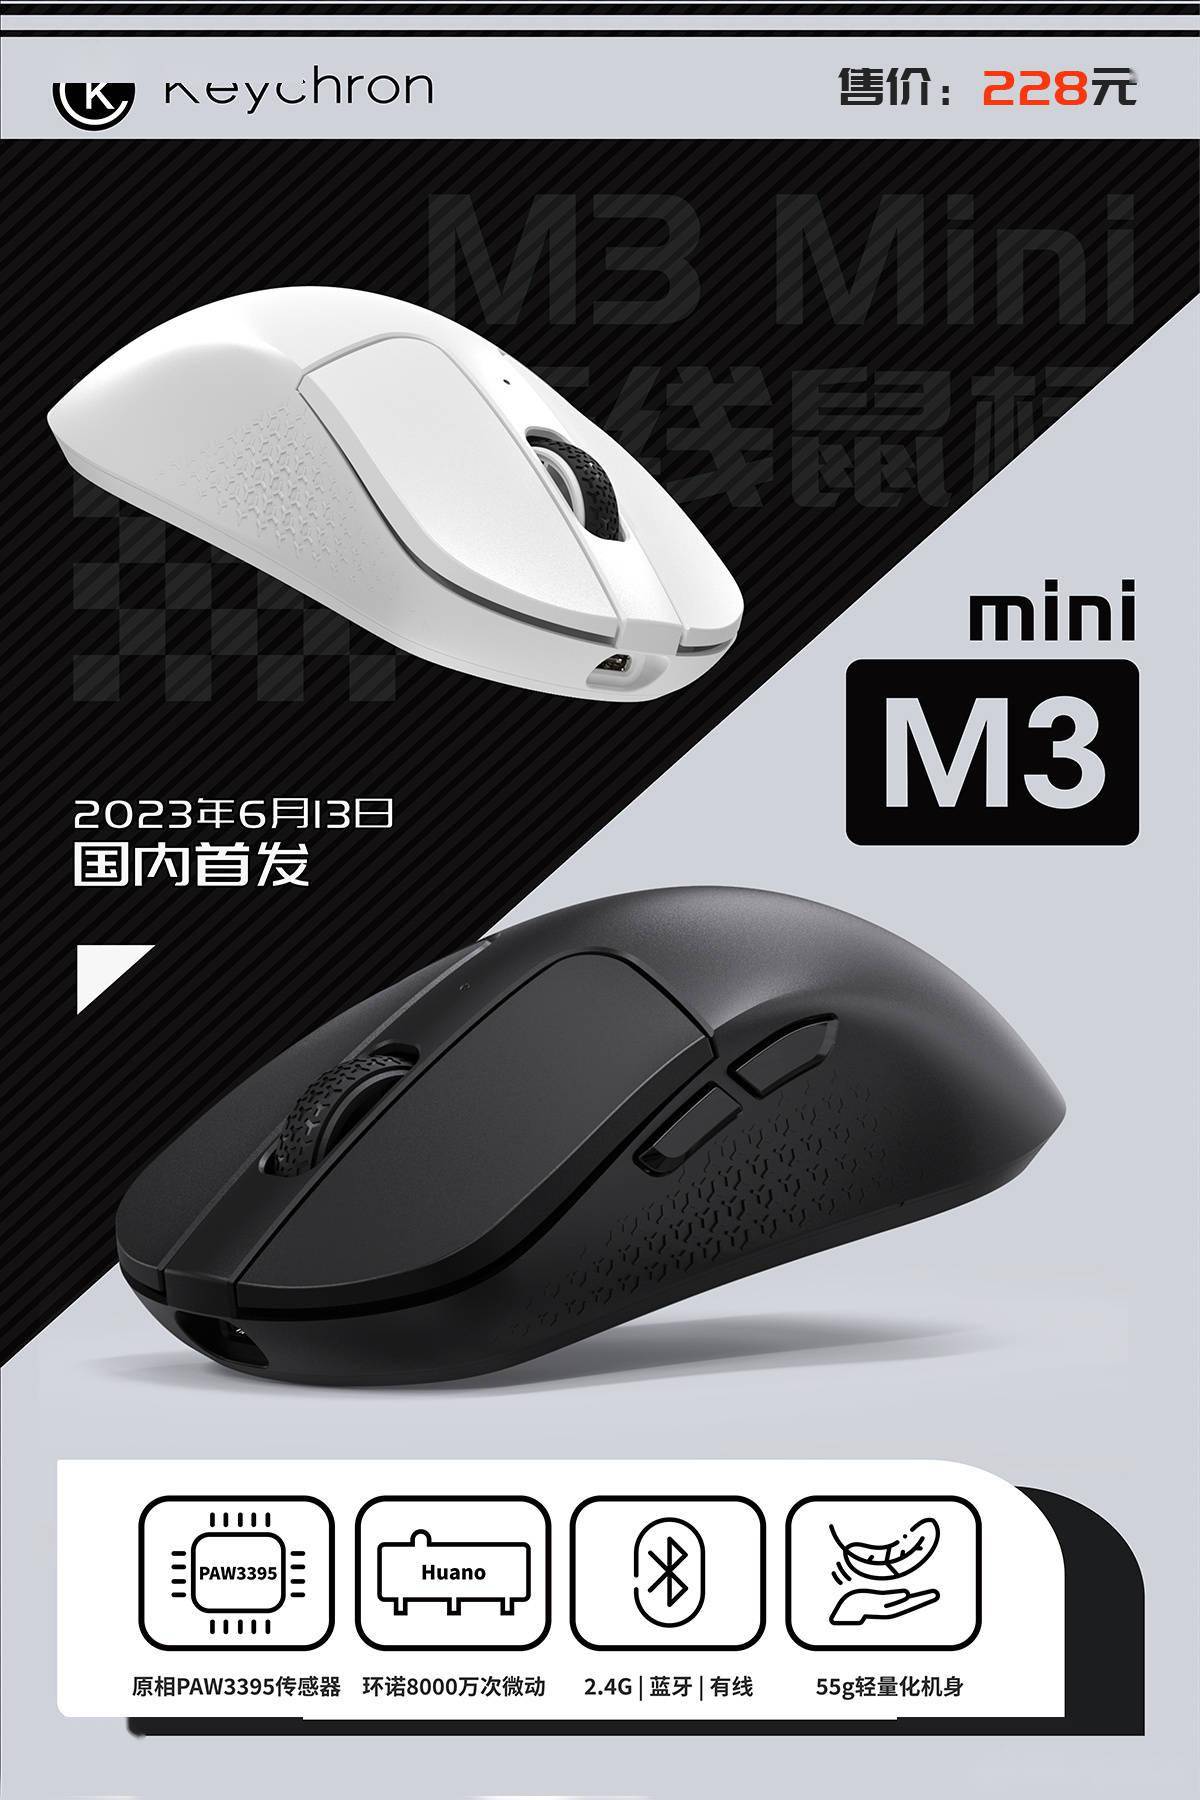 keychron推出新款M3 mini游戏鼠标 支持 2.4G、蓝牙和有线三种连接方式